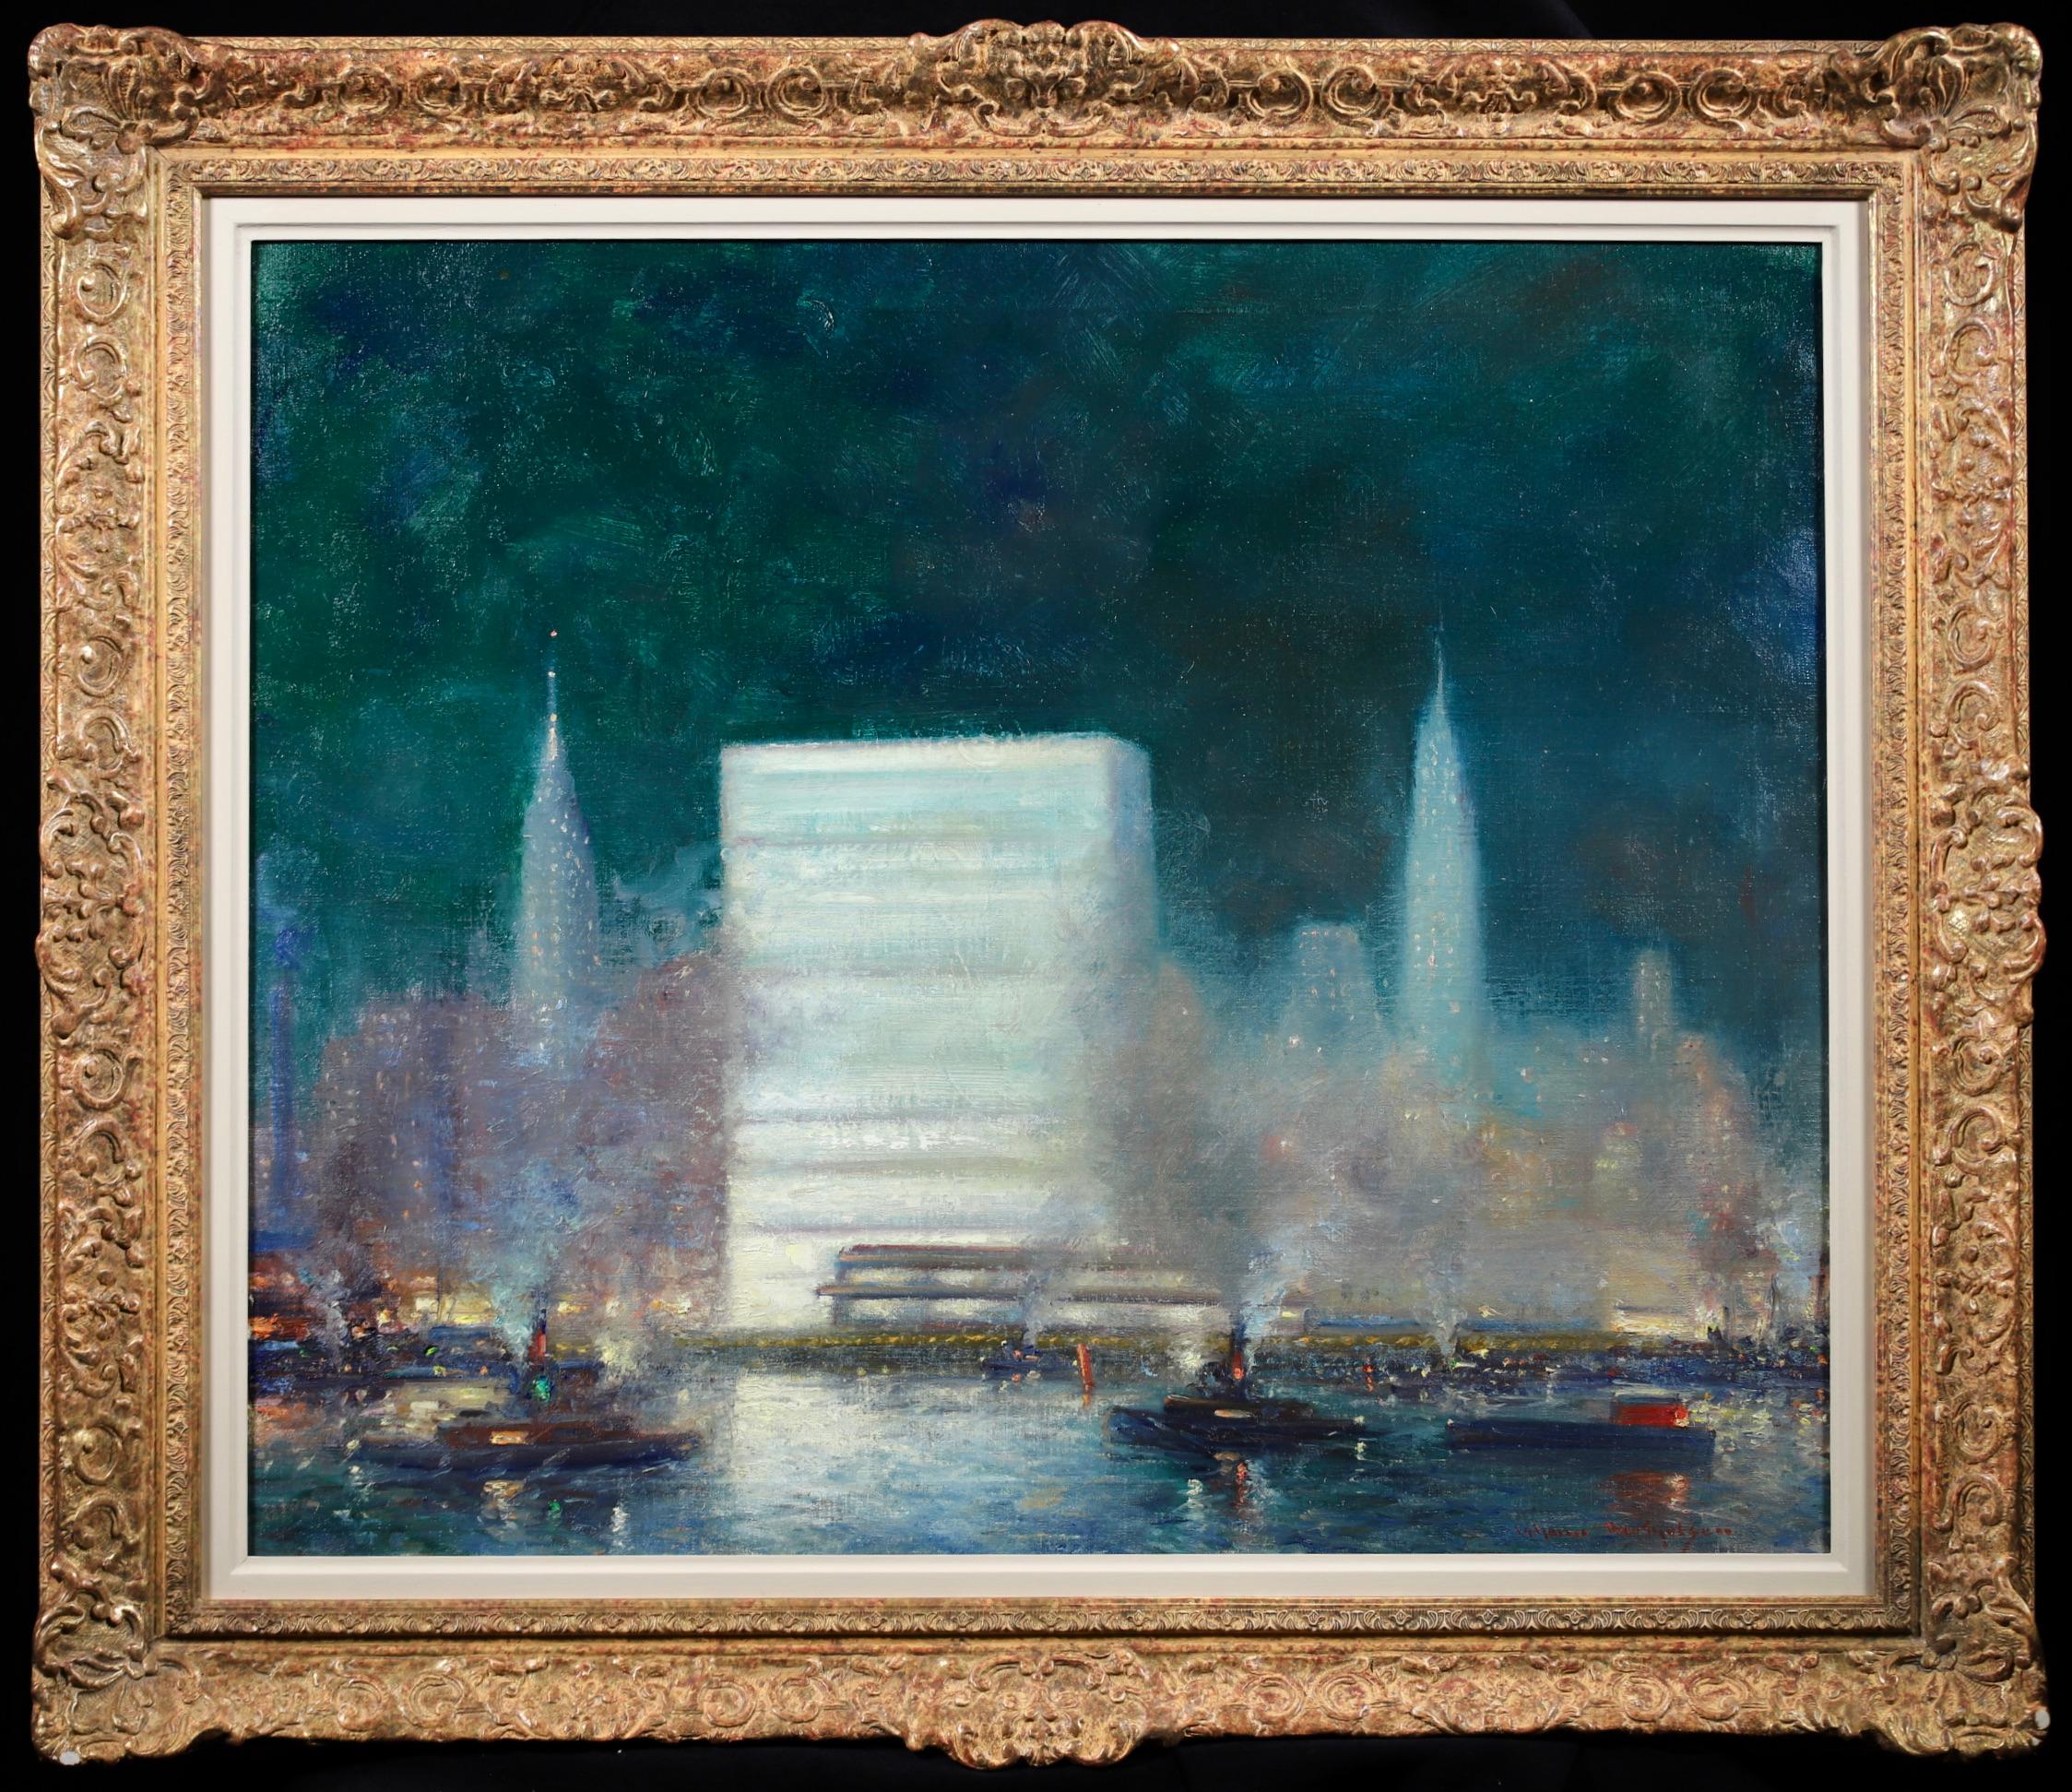 Superbe huile sur toile datant de 1955 du peintre impressionniste américain Johann Henrik Carl Berthelsen. L'œuvre représente une vue des bâtiments illuminés du front de mer de l'East River à New York - en particulier le bâtiment des Nations unies